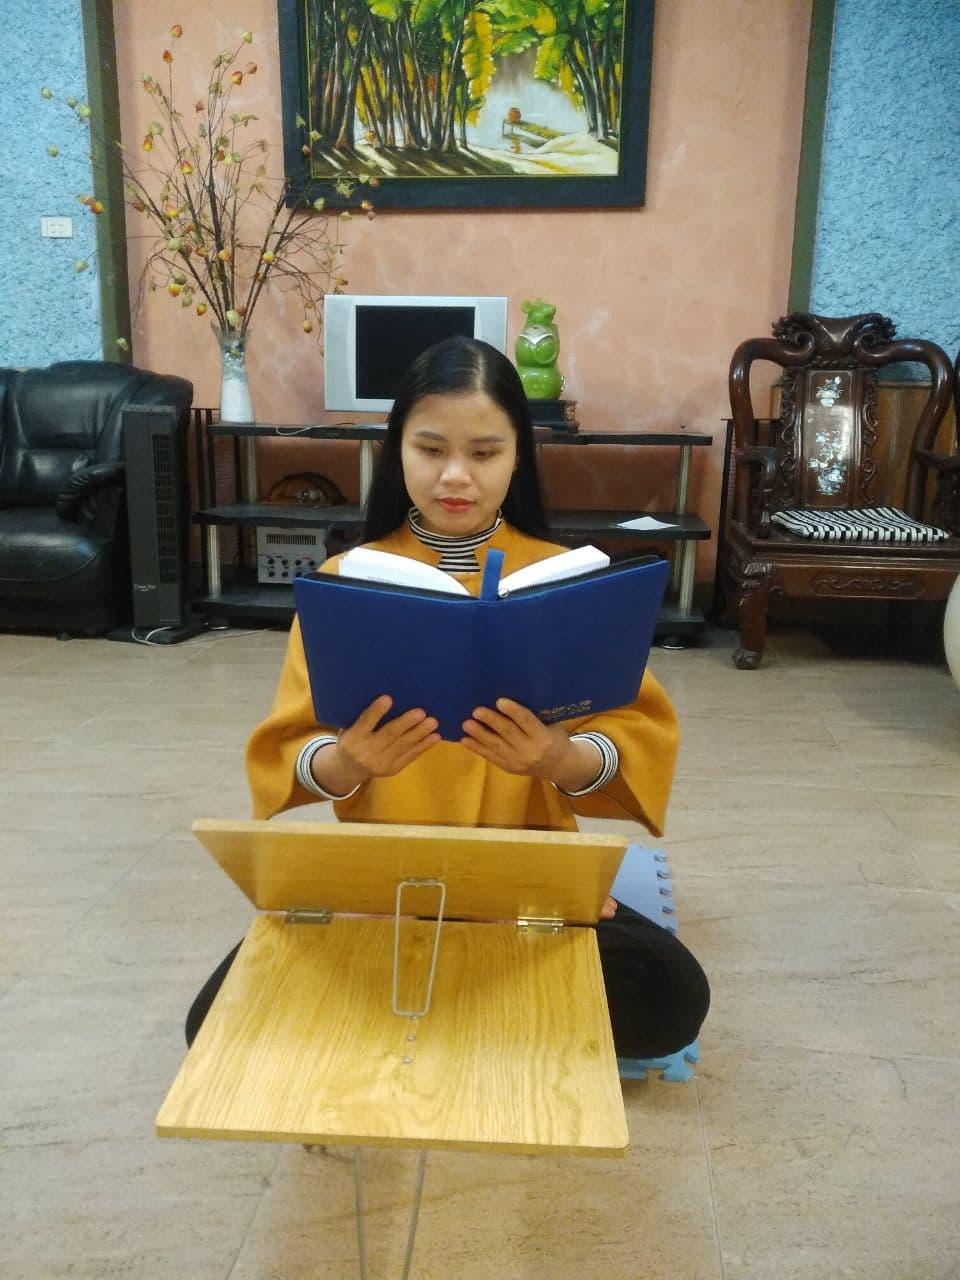 Hien reads Zhuan Falun, the main spiritual book of Falun Gong. (Courtesy of Thu Hien Ta)